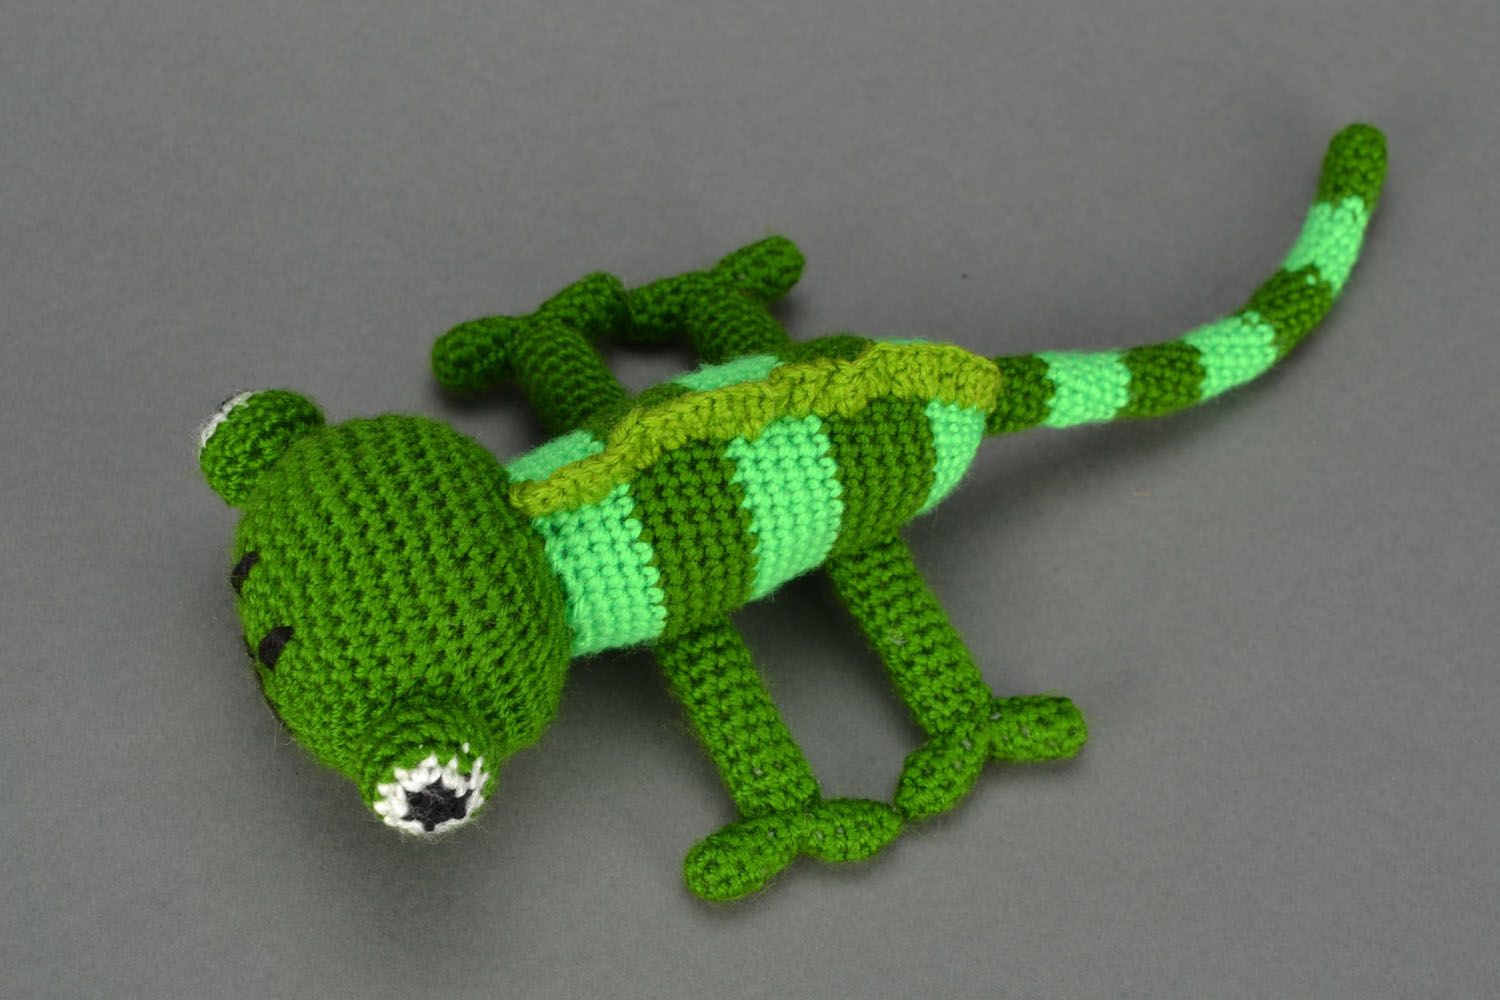 Homemade crochet toy Chameleon photo 1